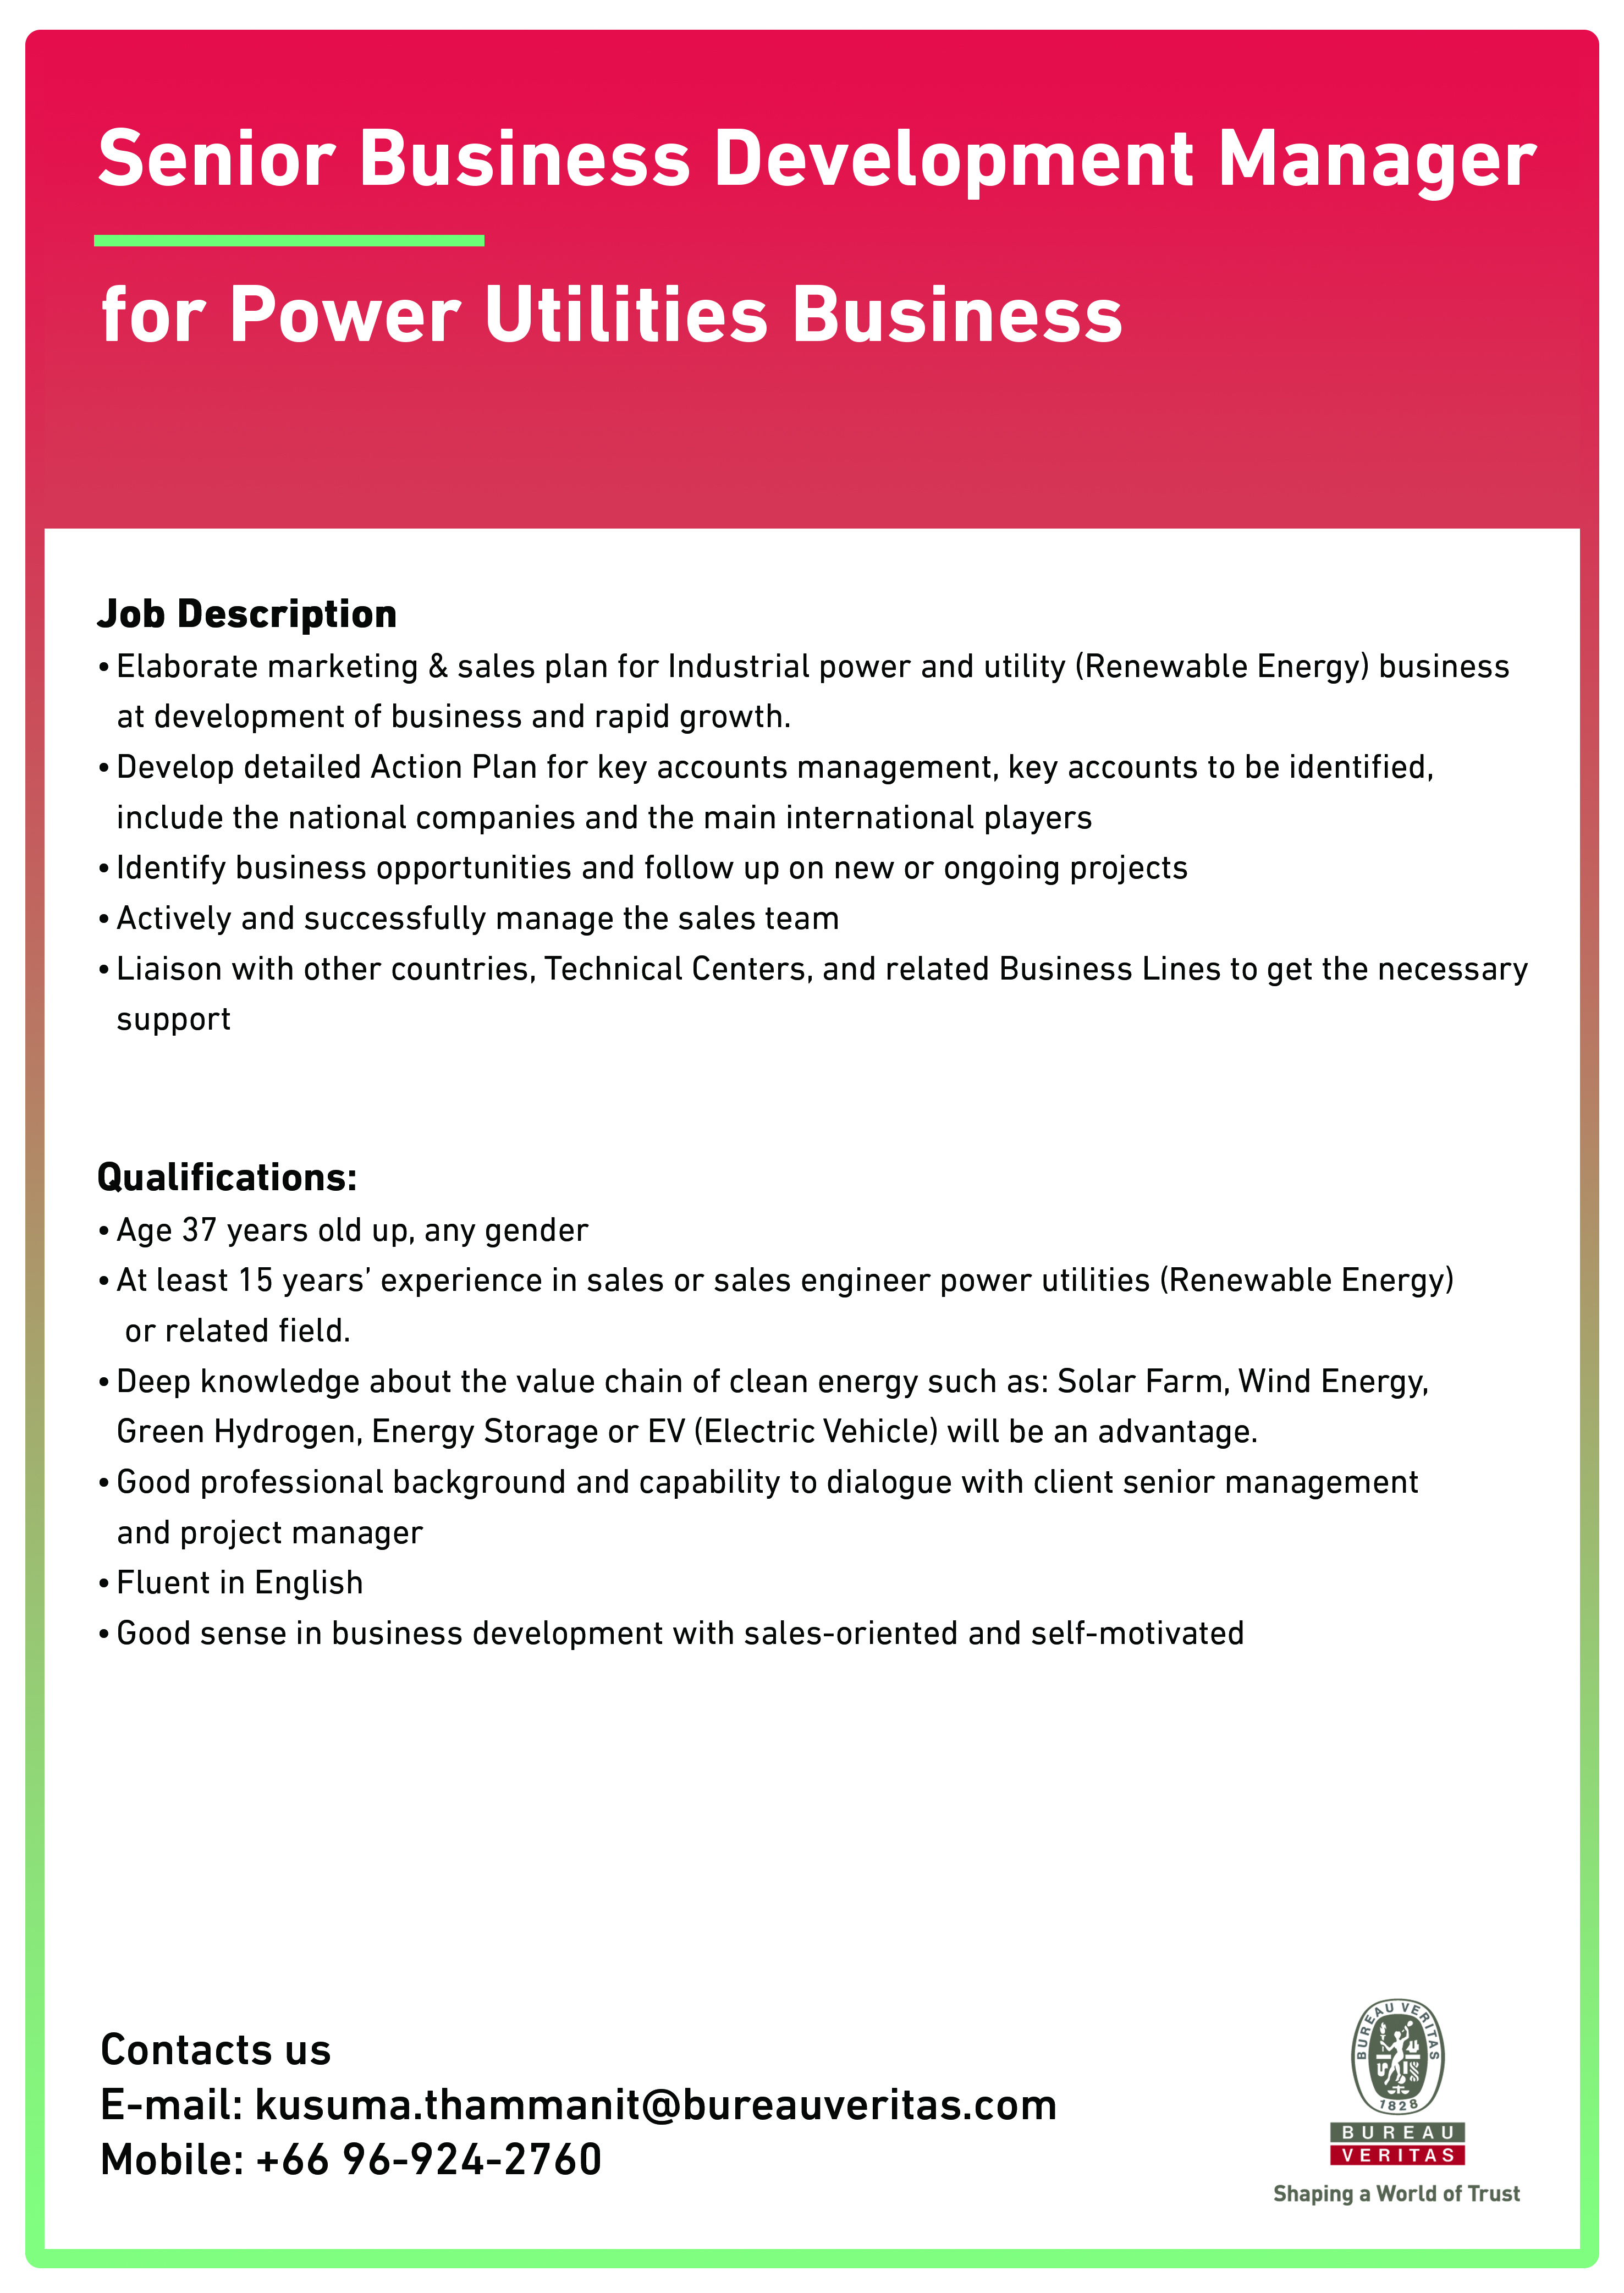 BV job offer - Senior Business Development Manager for Power Utilities Business